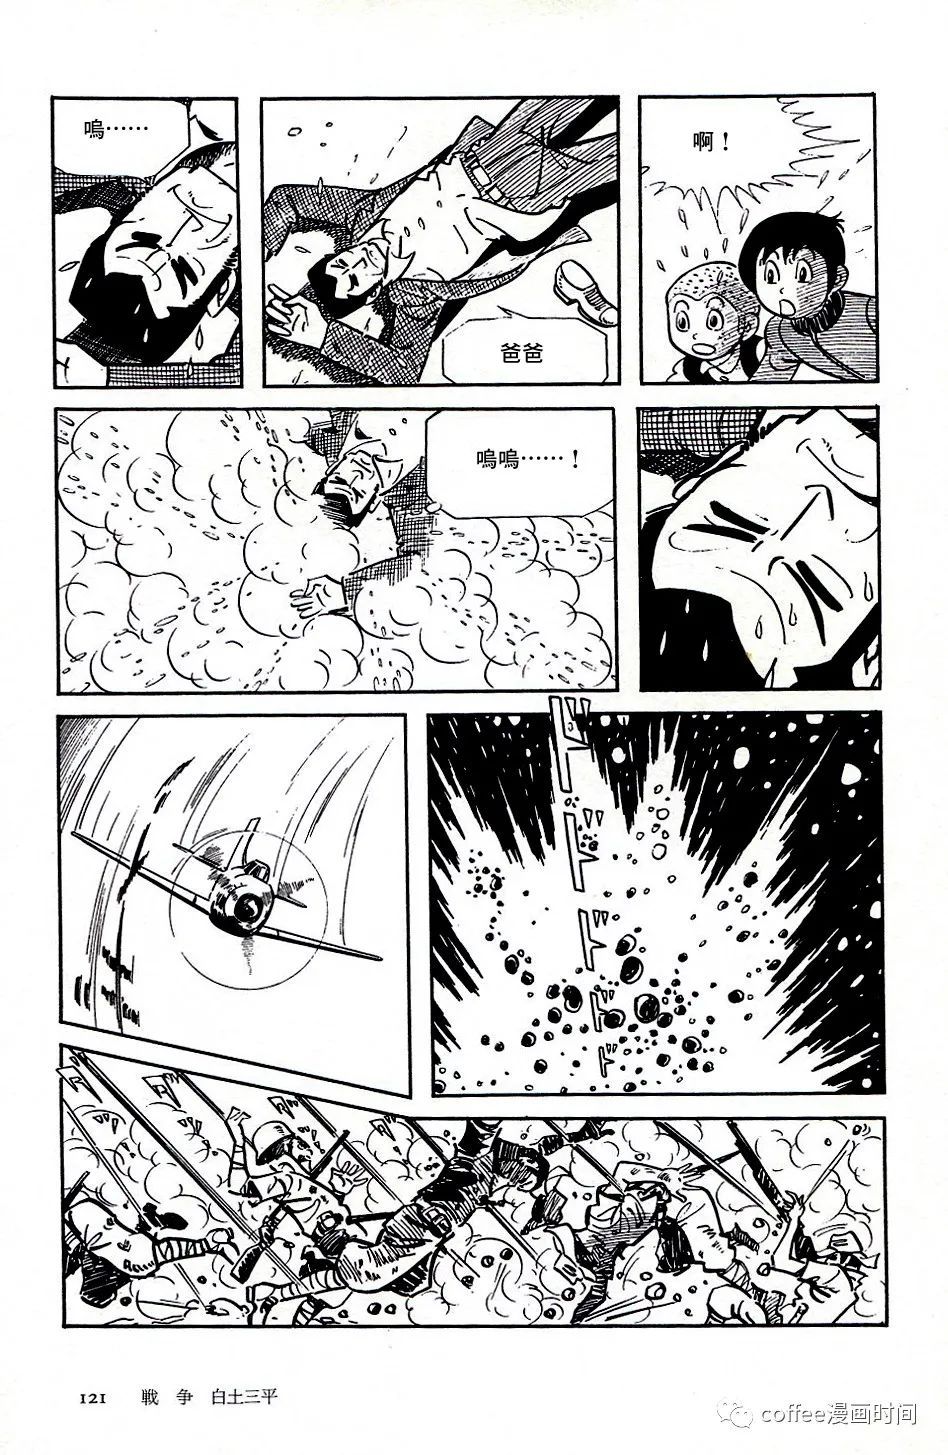 日本短篇漫畫傑作集 - 白土三平《戰爭》 - 4